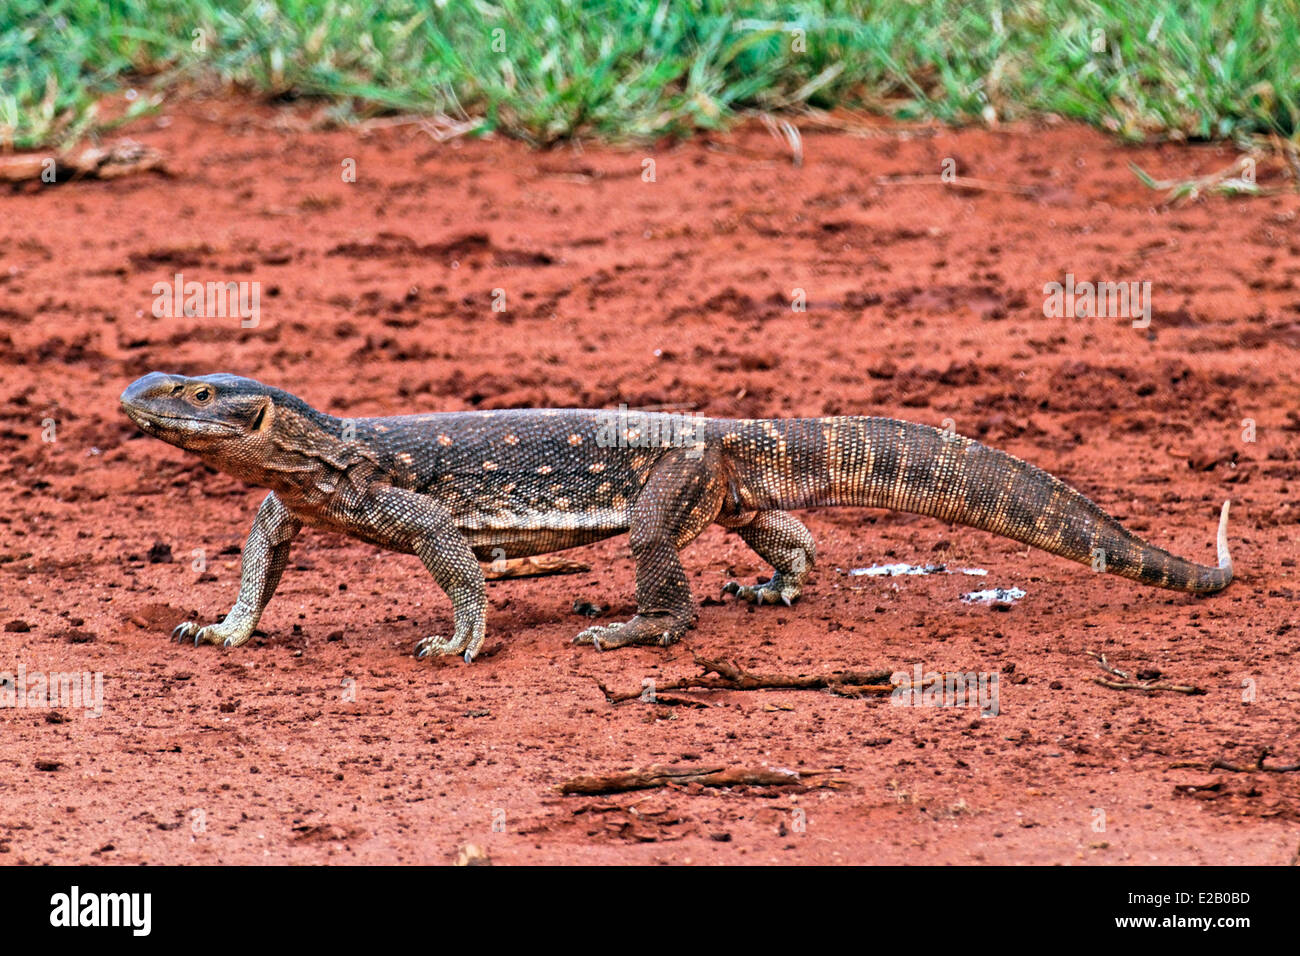 Kenya, Tsavo Est national park, iguana (Iguanidae) Stock Photo